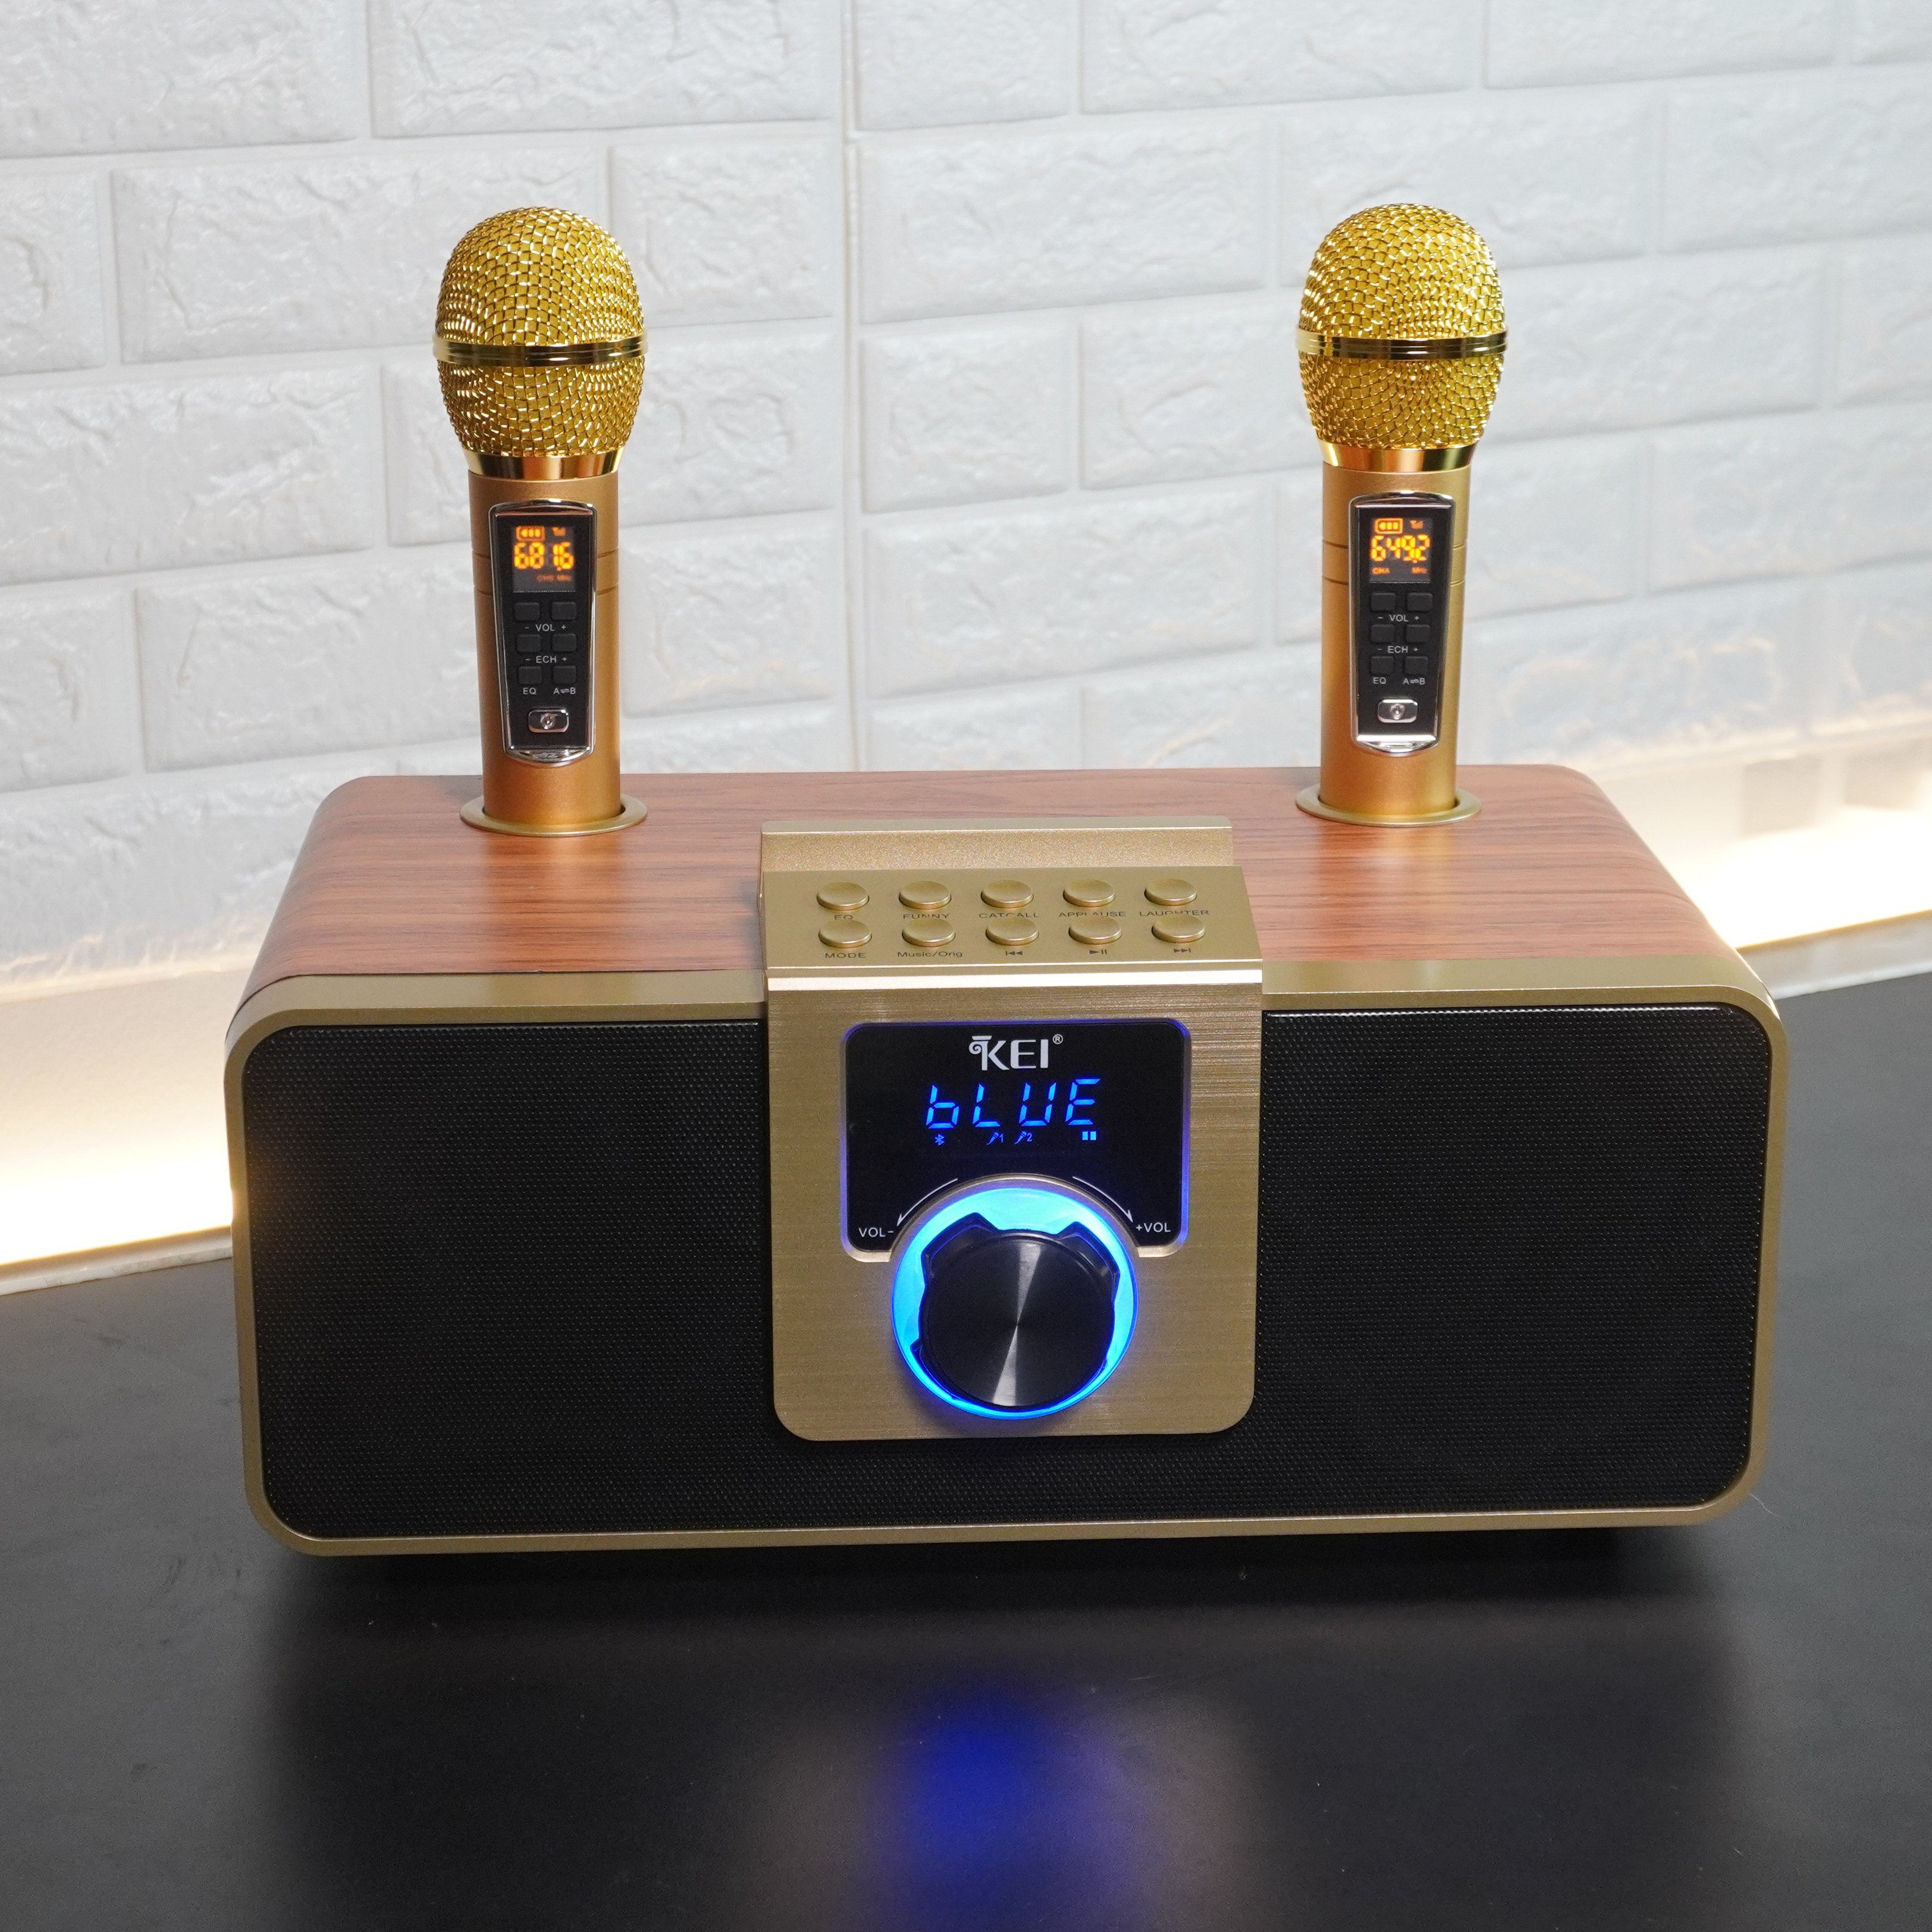 Loa karaoke bluetooth KEI K08 - Tặng kèm 2 micro không dây có màn hình LCD - Sạc pin cho micro ngay trên loa - Chỉnh bass treble echo trên micro – Đầy đủ cổng kết nối USB, AUX, TF card - Loa xách tay du lịch cực chất